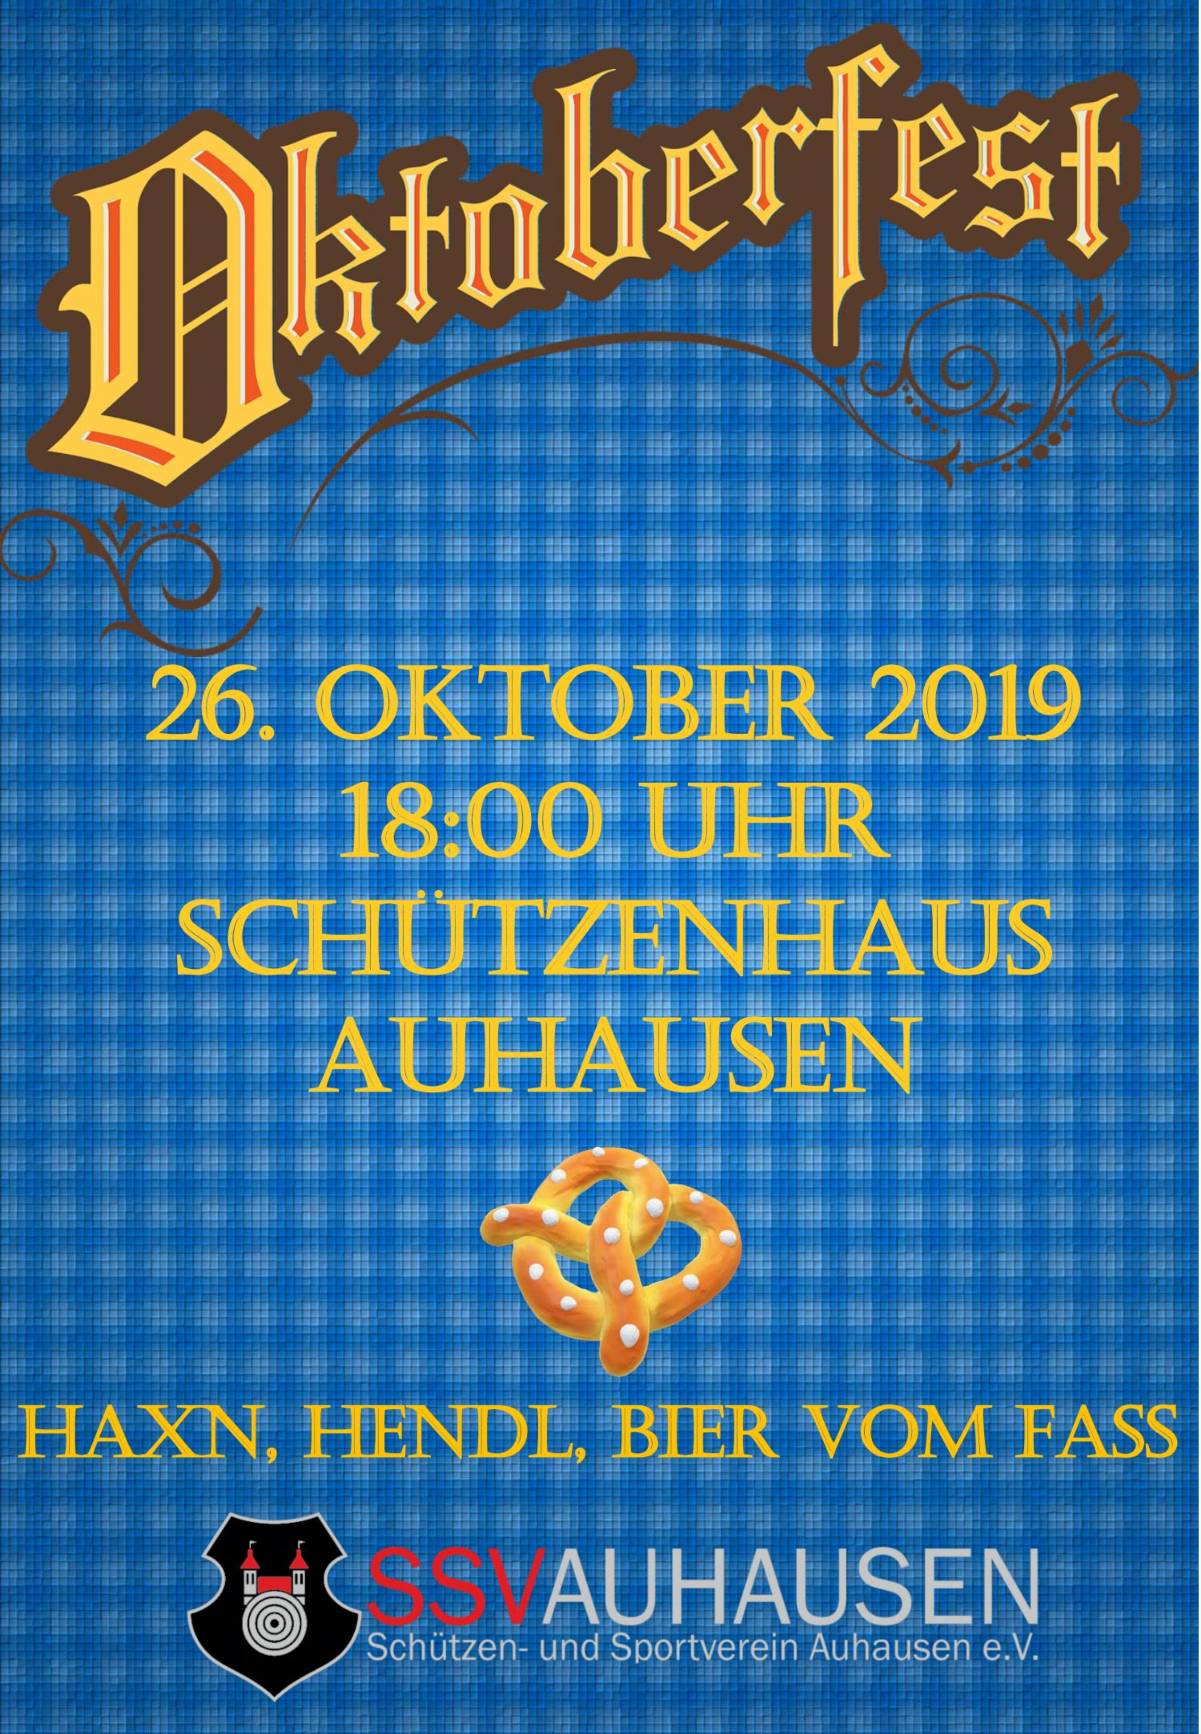 SSV Auhausen - Oktoberfest im Schützenhaus